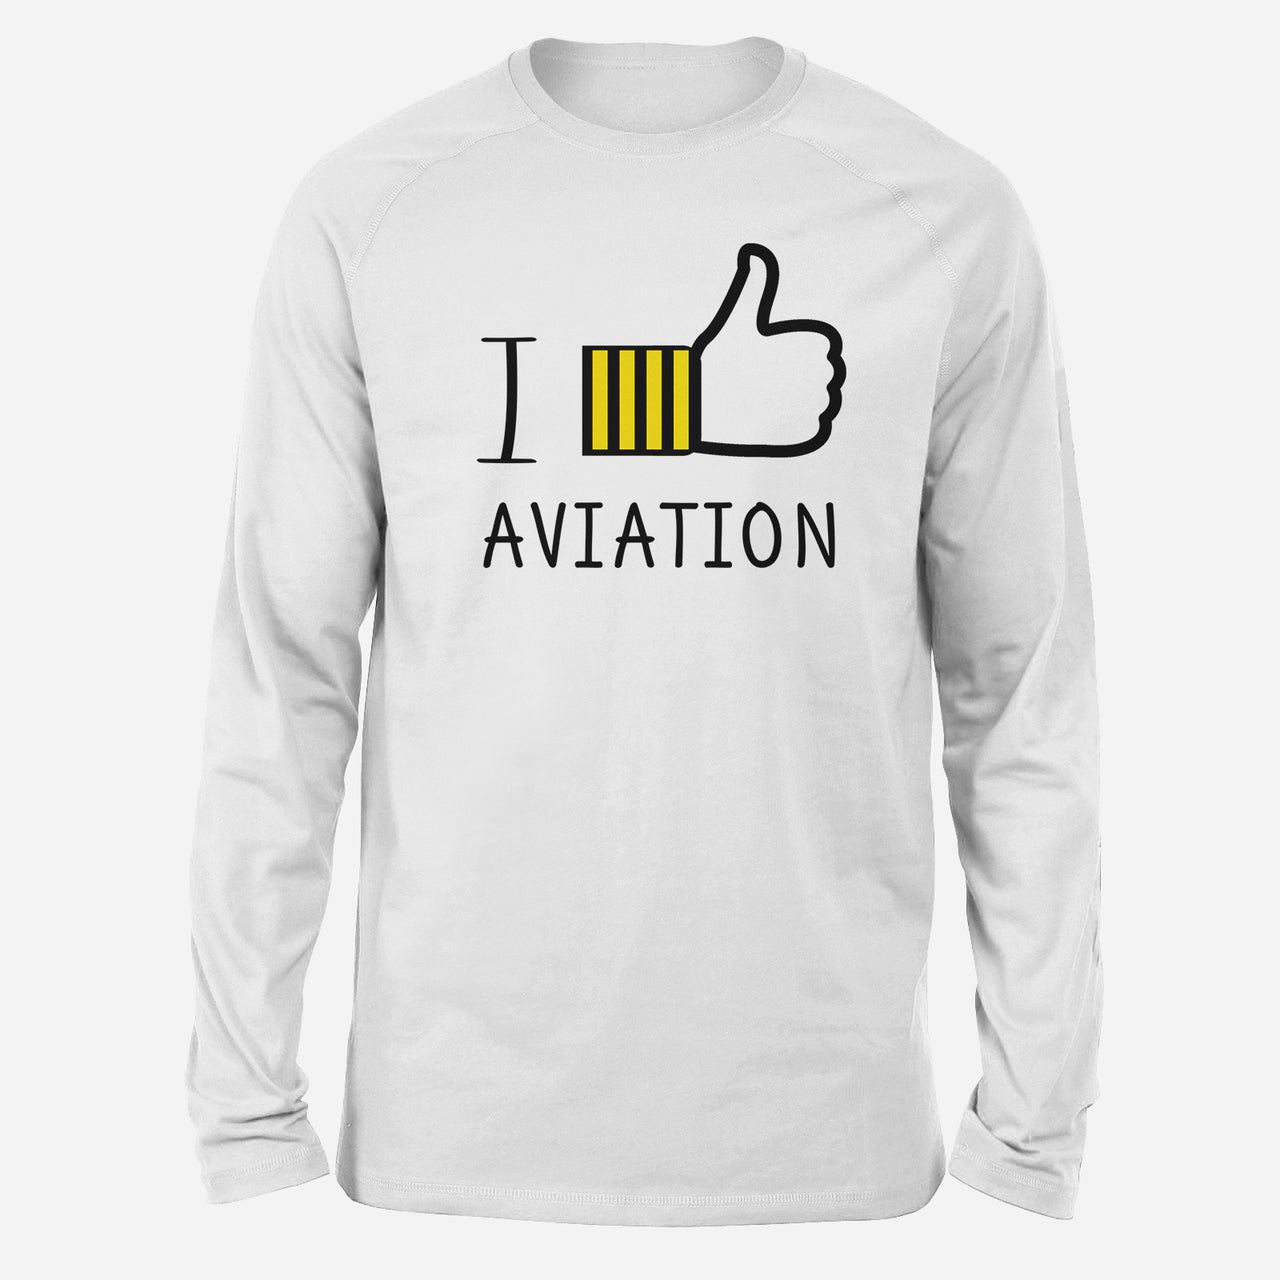 I Like Aviation Designed Long-Sleeve T-Shirts